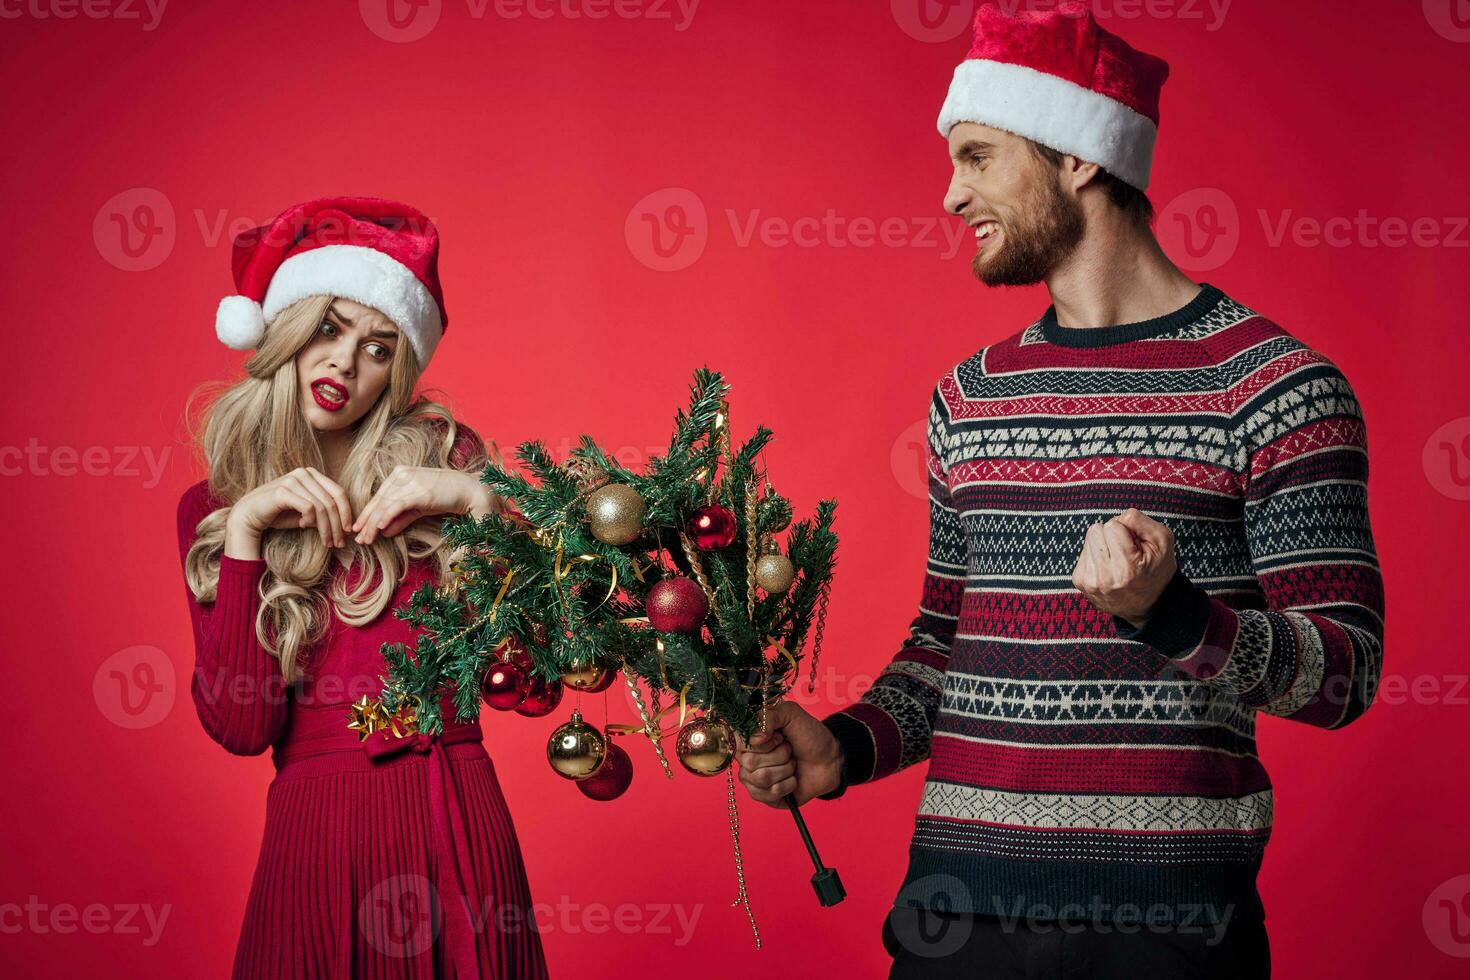 emotional Mann und Frau Weihnachten Urlaub Geschenke rot Hintergrund foto